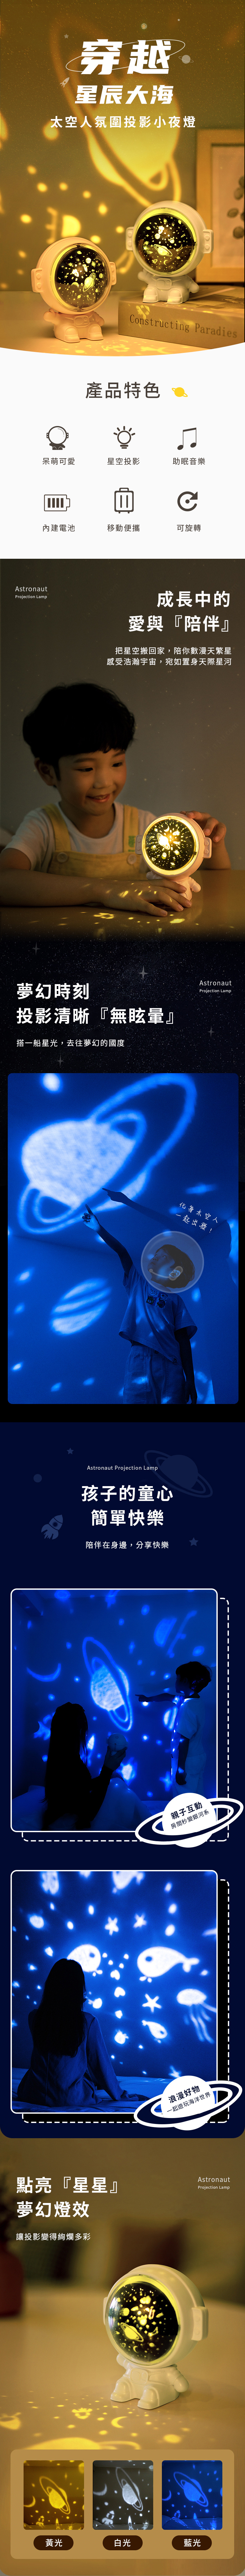 【3/29~5/31畢業季早鳥88折優惠】創意小物館 太空人氛圍投影小夜燈 白色